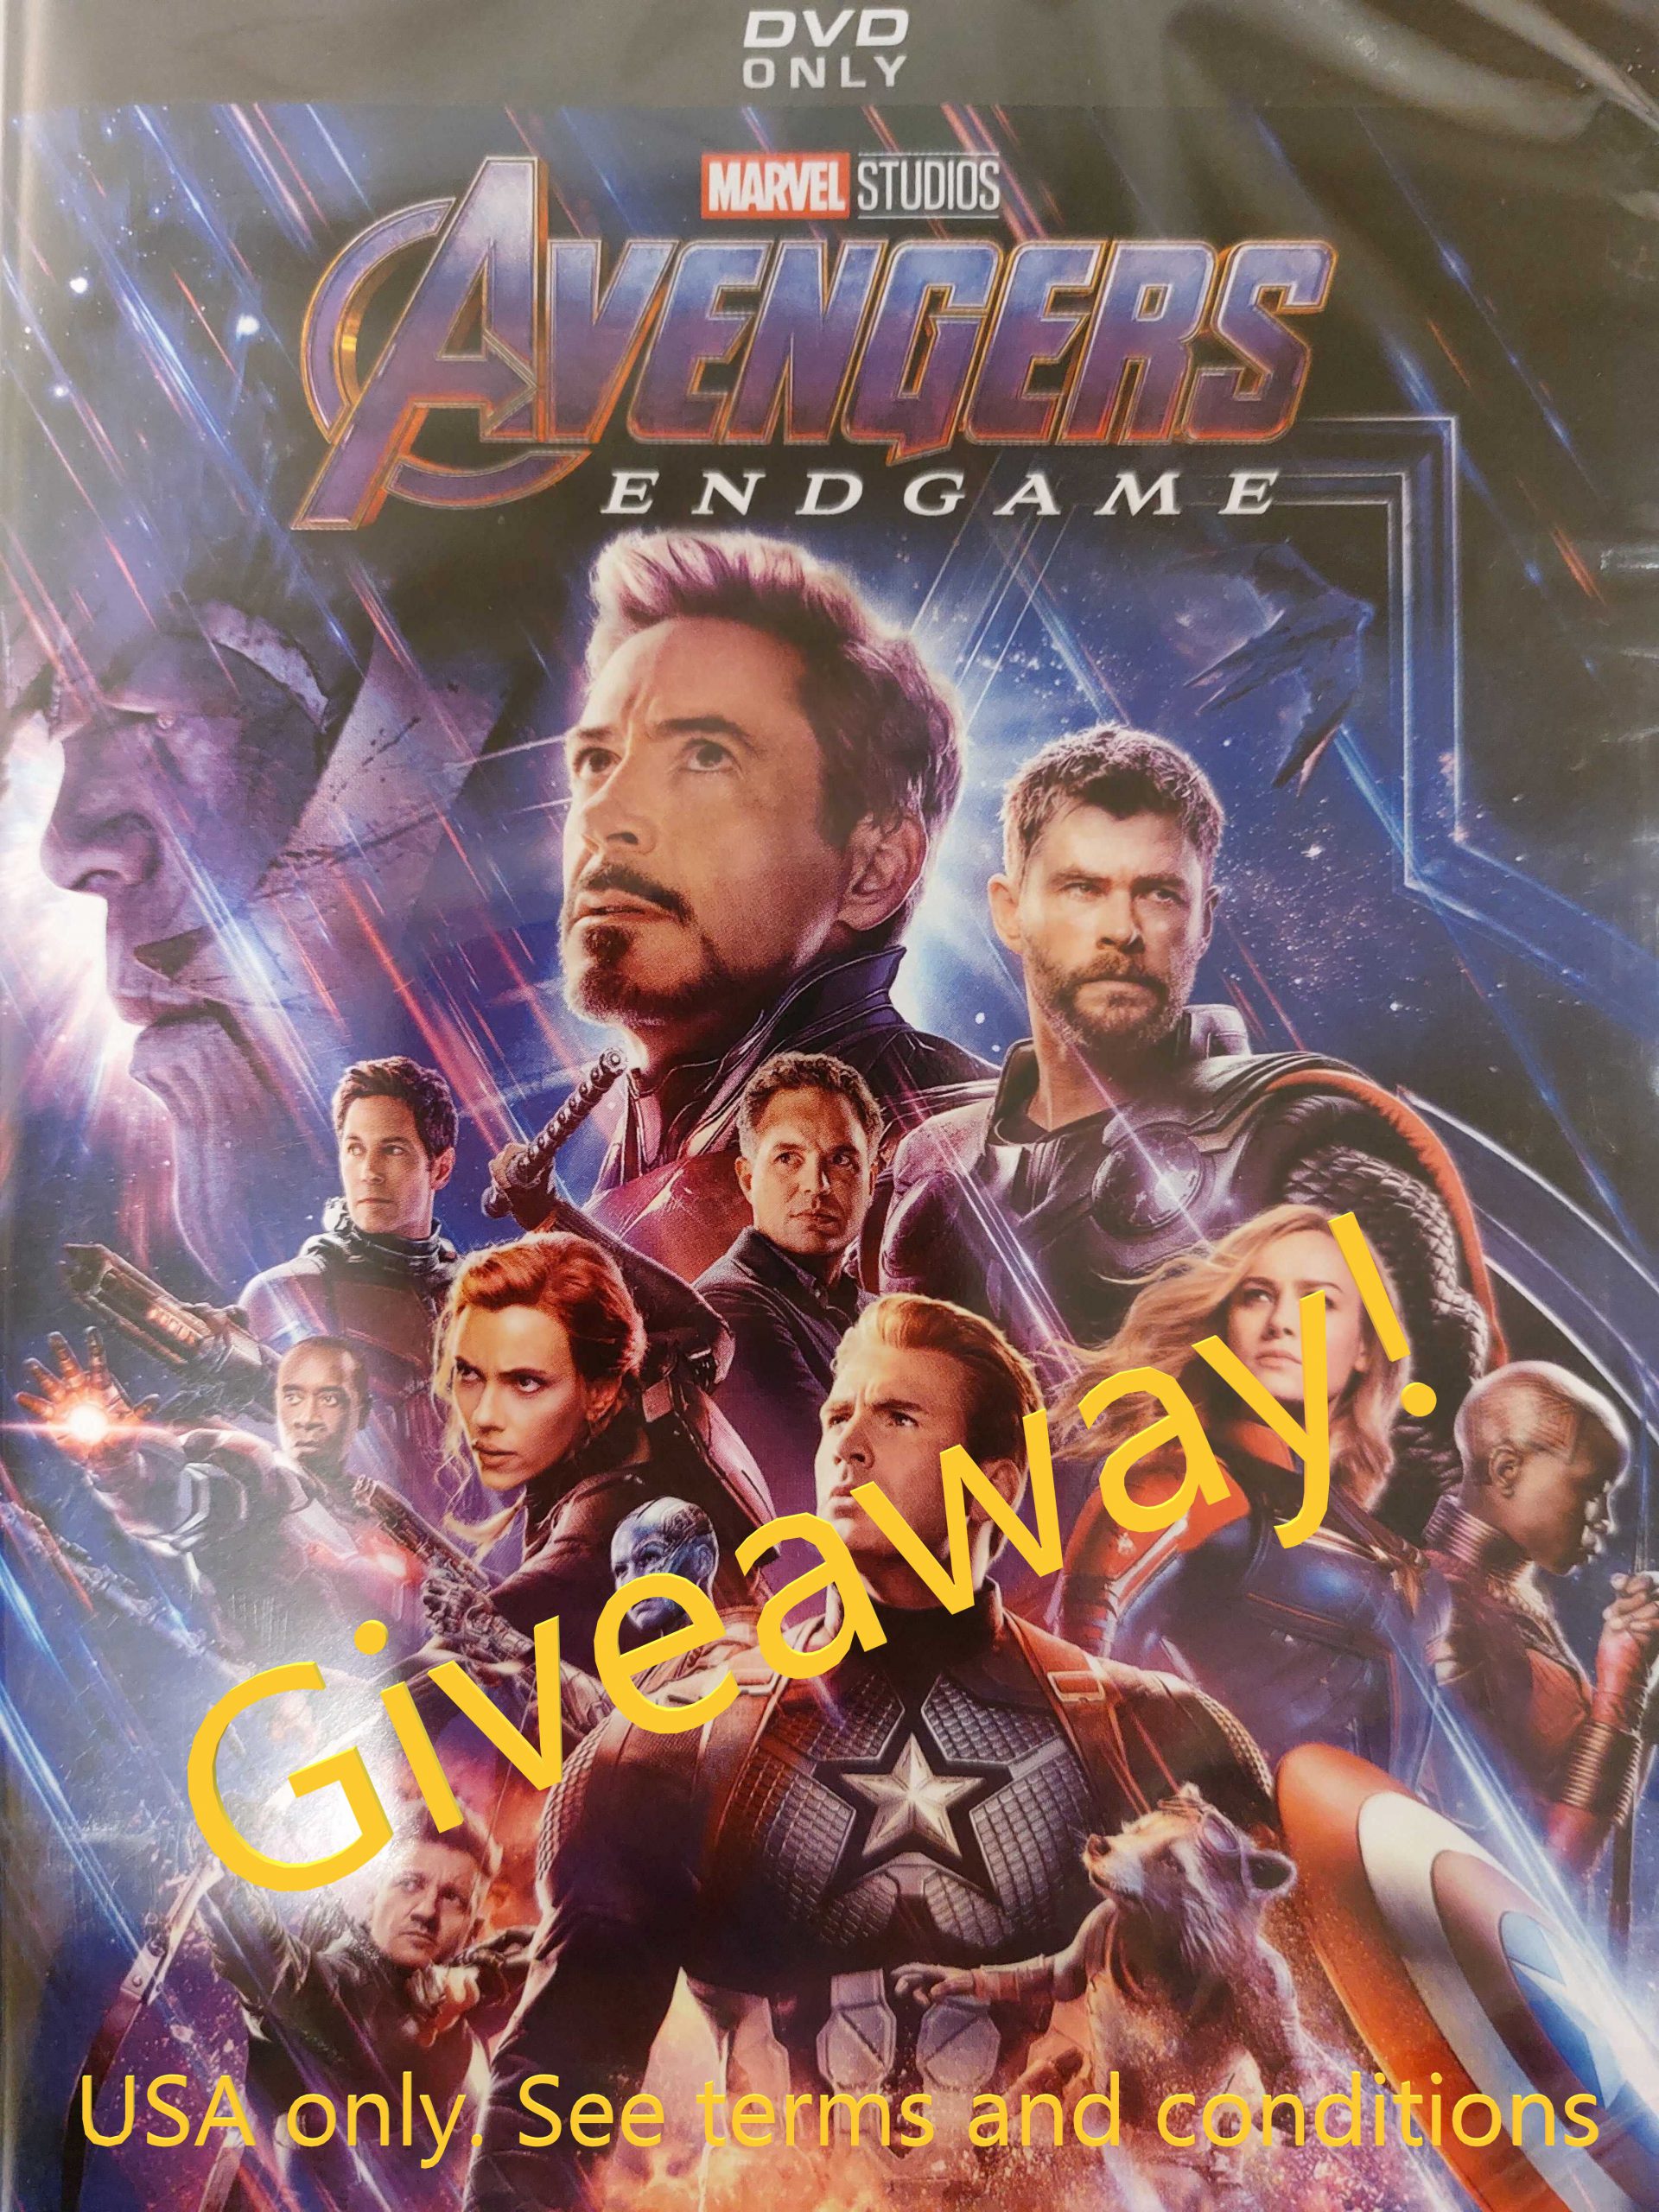 Avengers Endgame DVD giveaway winner!!